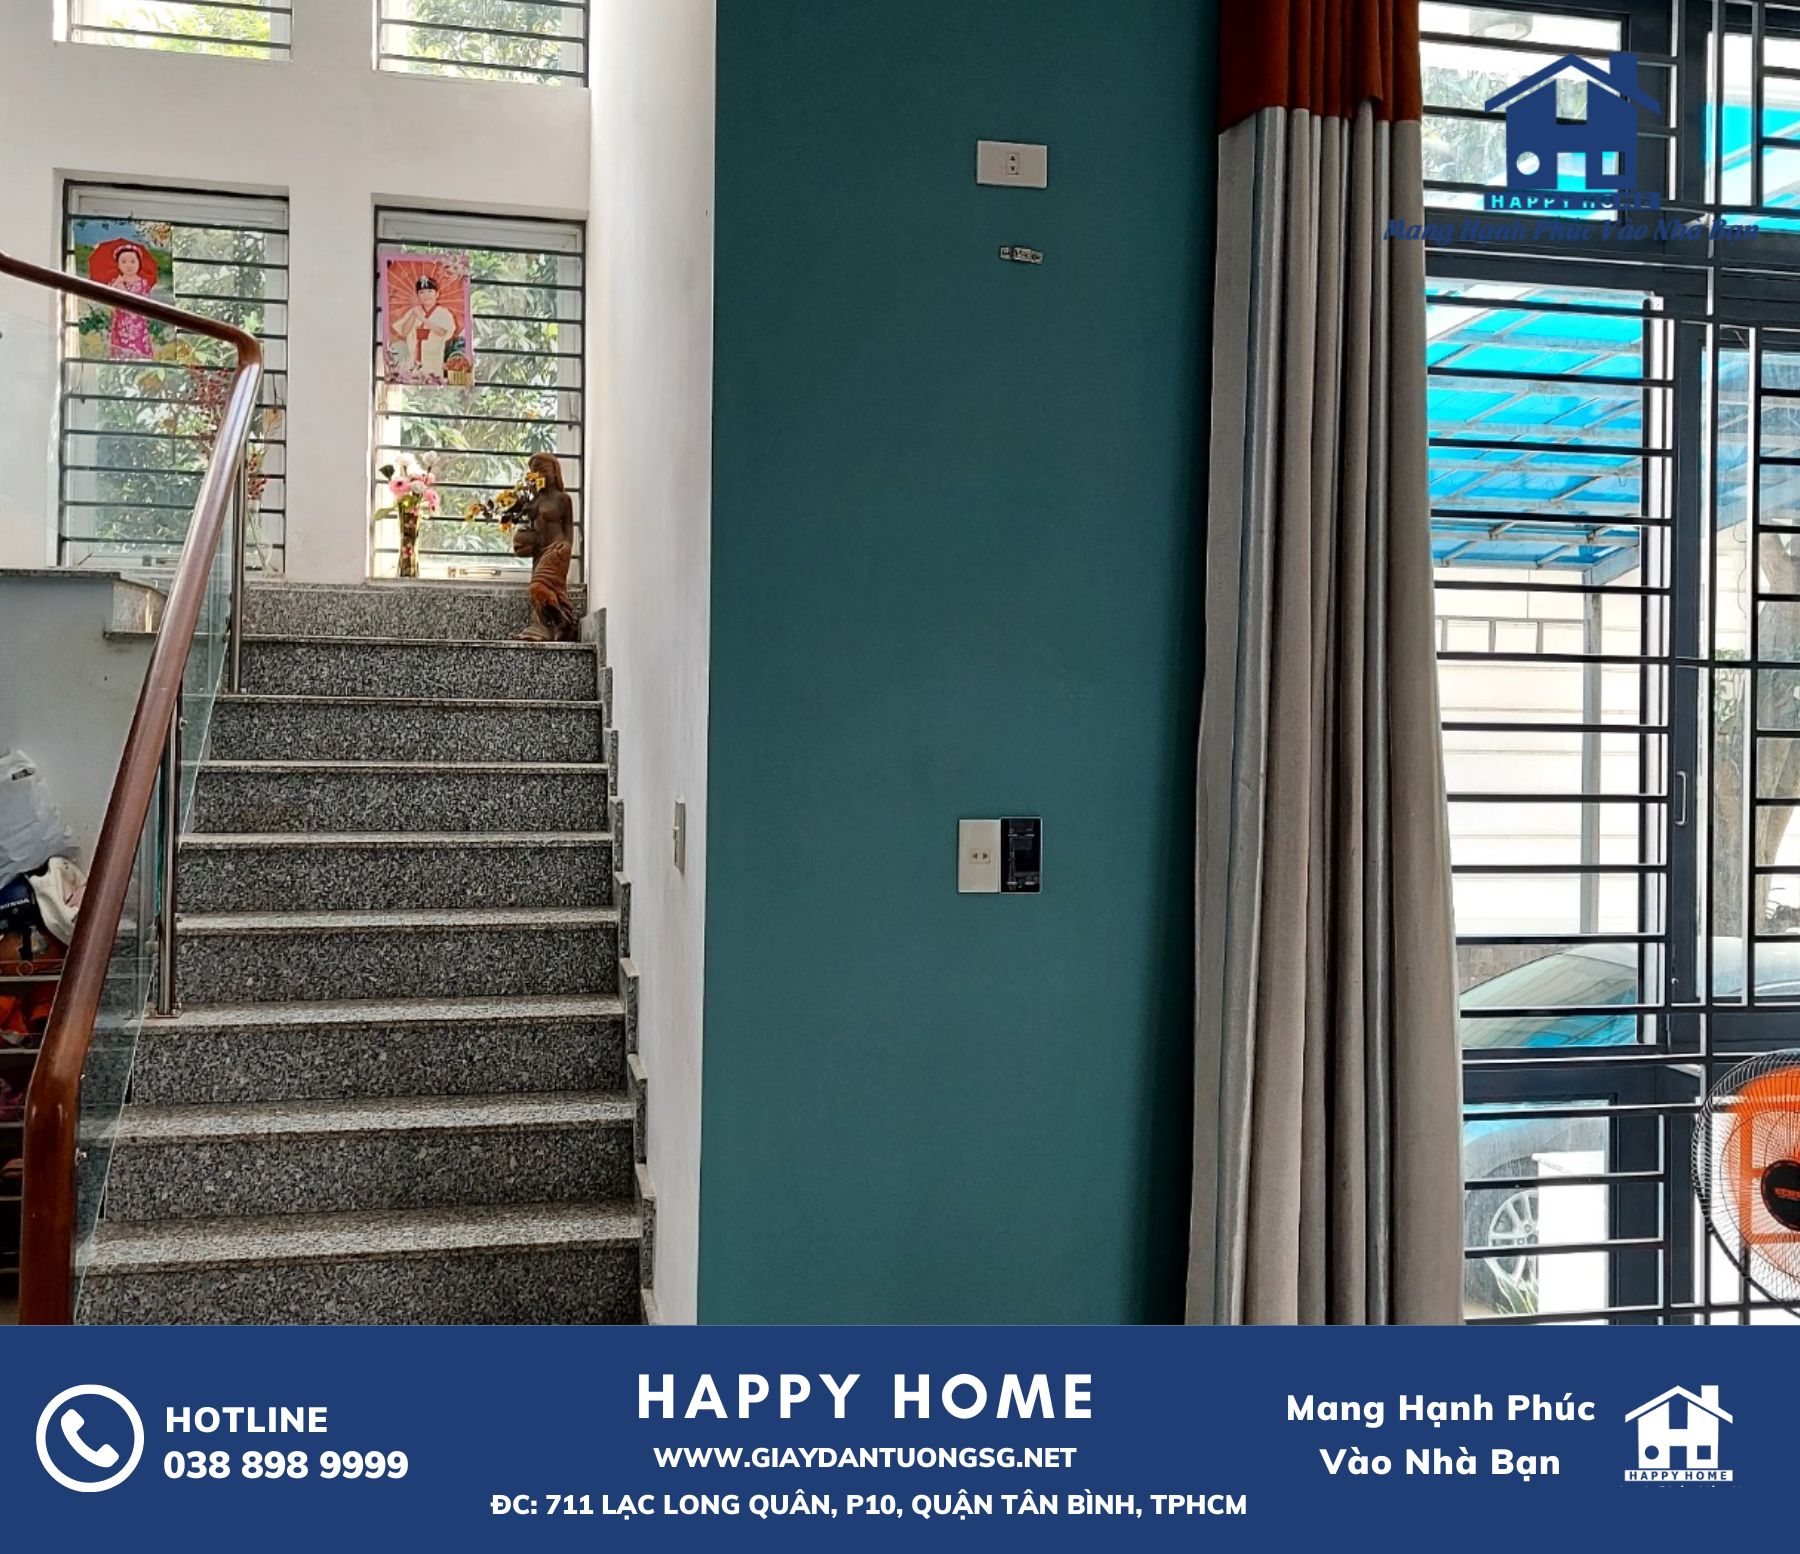 Happy Home - Giải pháp hoàn hảo cho việc thi công giấy dán tường tại nhà chị Hiền